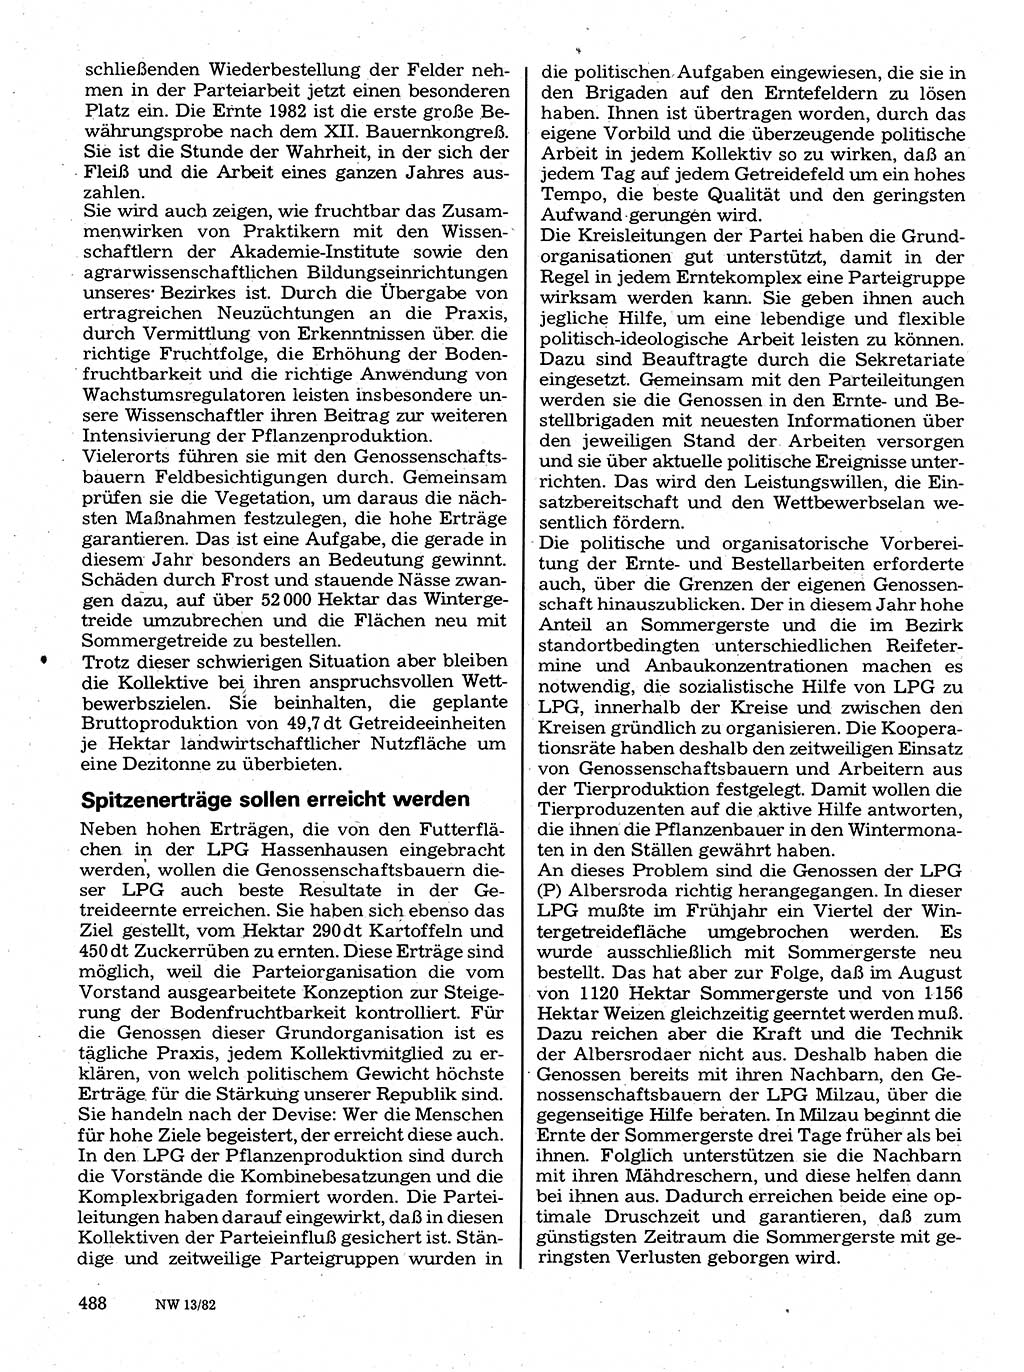 Neuer Weg (NW), Organ des Zentralkomitees (ZK) der SED (Sozialistische Einheitspartei Deutschlands) für Fragen des Parteilebens, 37. Jahrgang [Deutsche Demokratische Republik (DDR)] 1982, Seite 488 (NW ZK SED DDR 1982, S. 488)